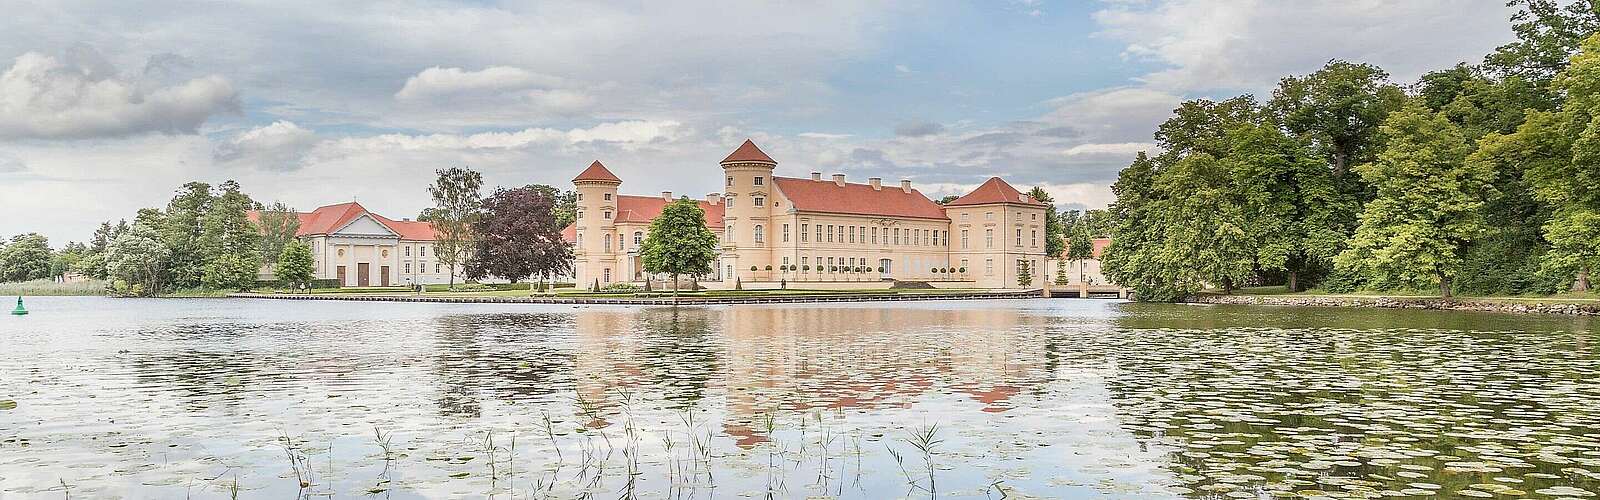 Schloss Rheinsberg,
        
    

        Foto: Fotograf / Lizenz - Media Import/Steffen Lehmann